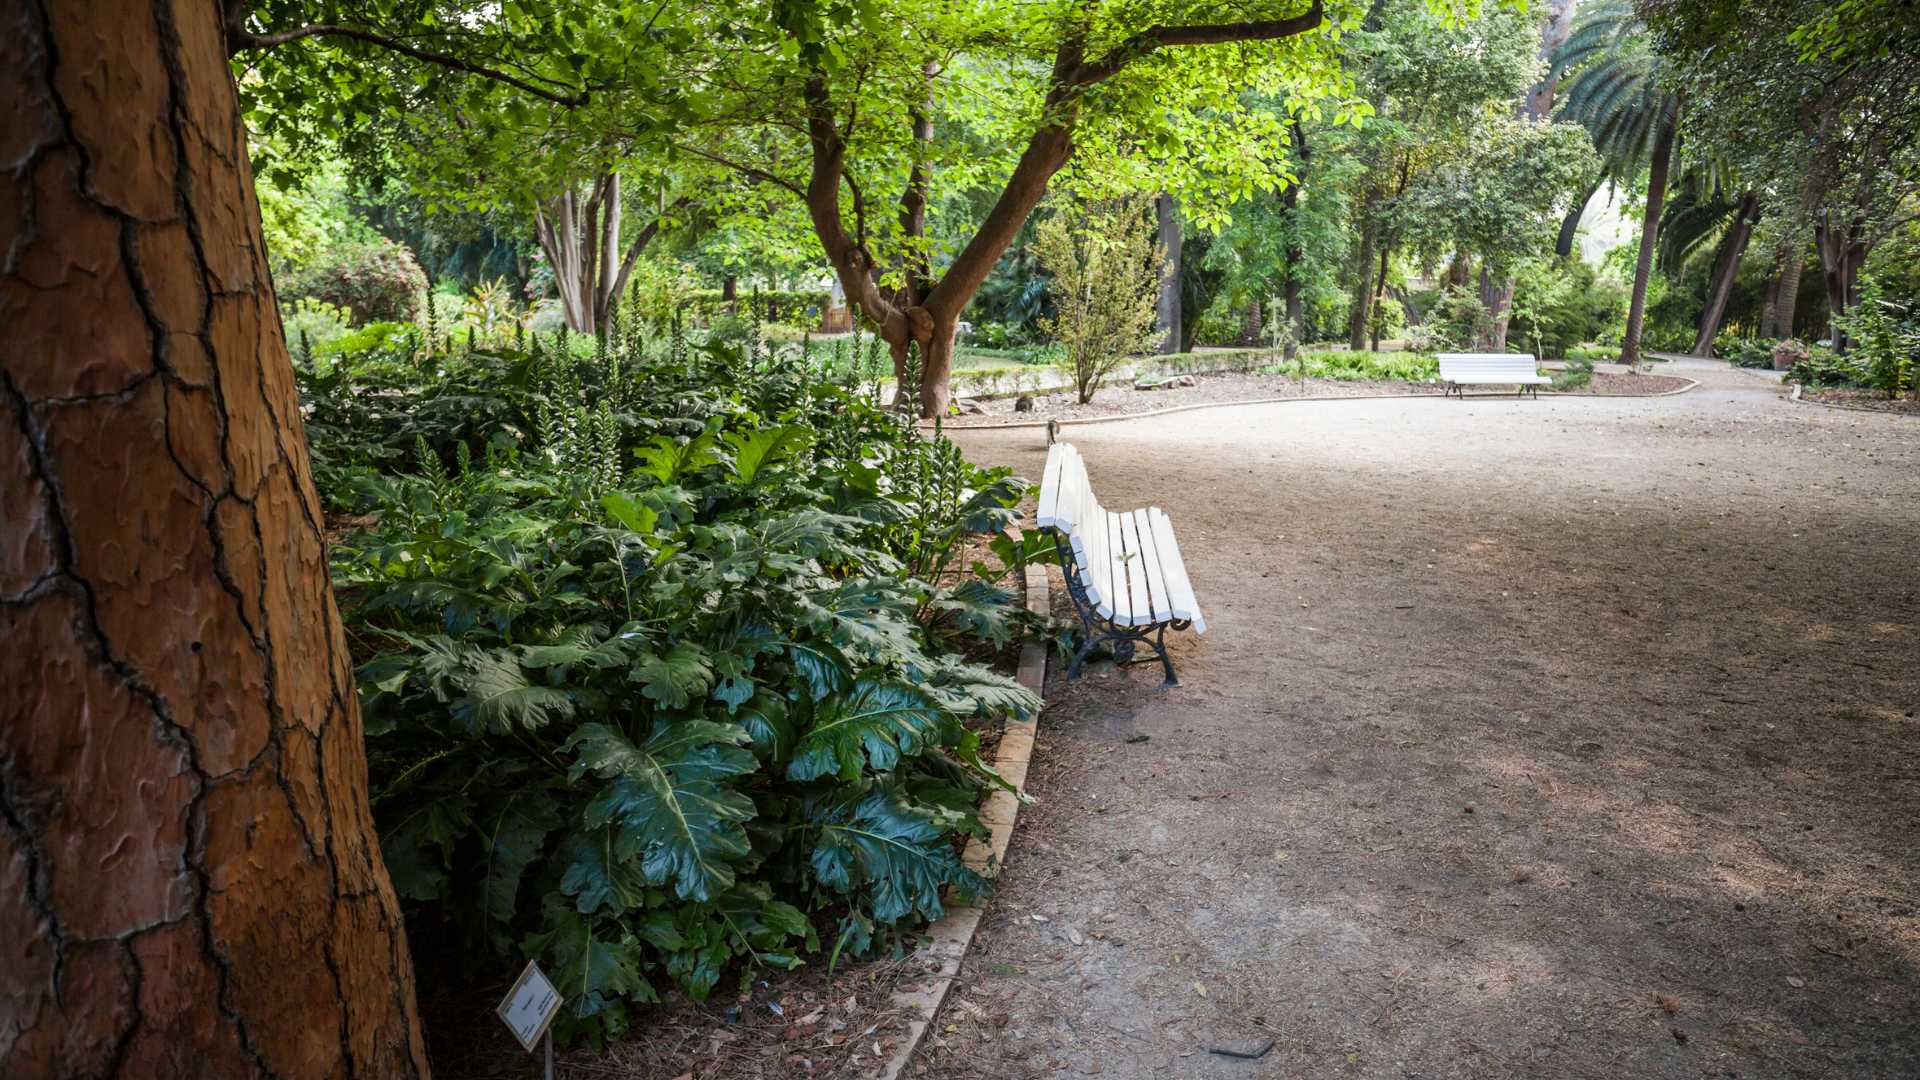 Jardín Botánico de València